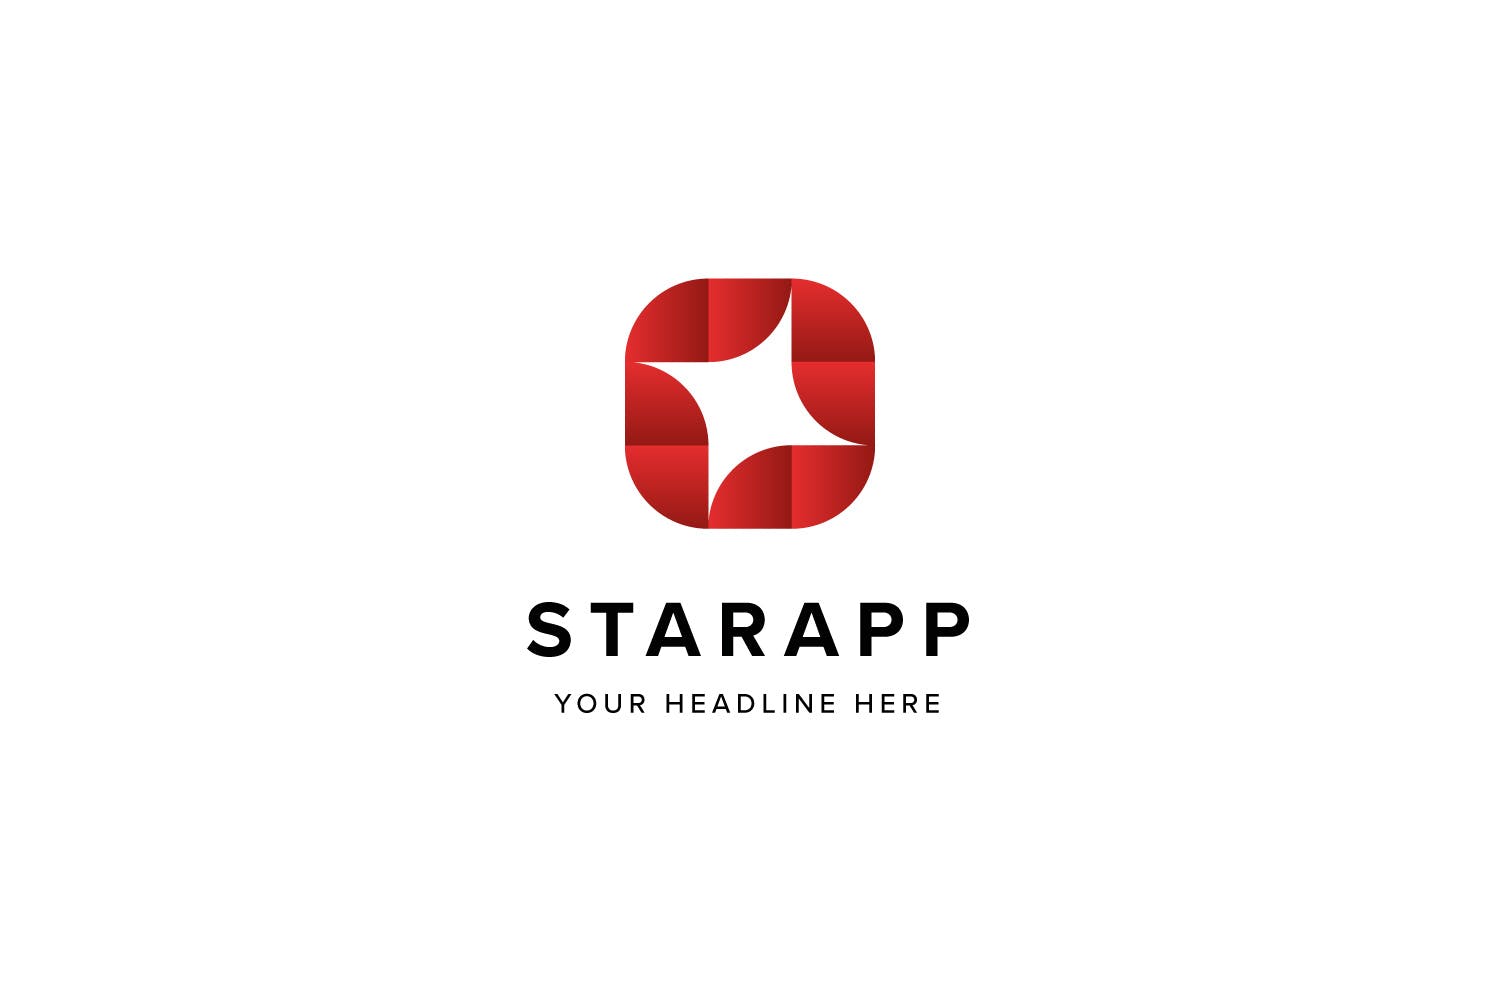 星级APP评选Logo标志设计模板素材 Star App Logo Template插图(2)